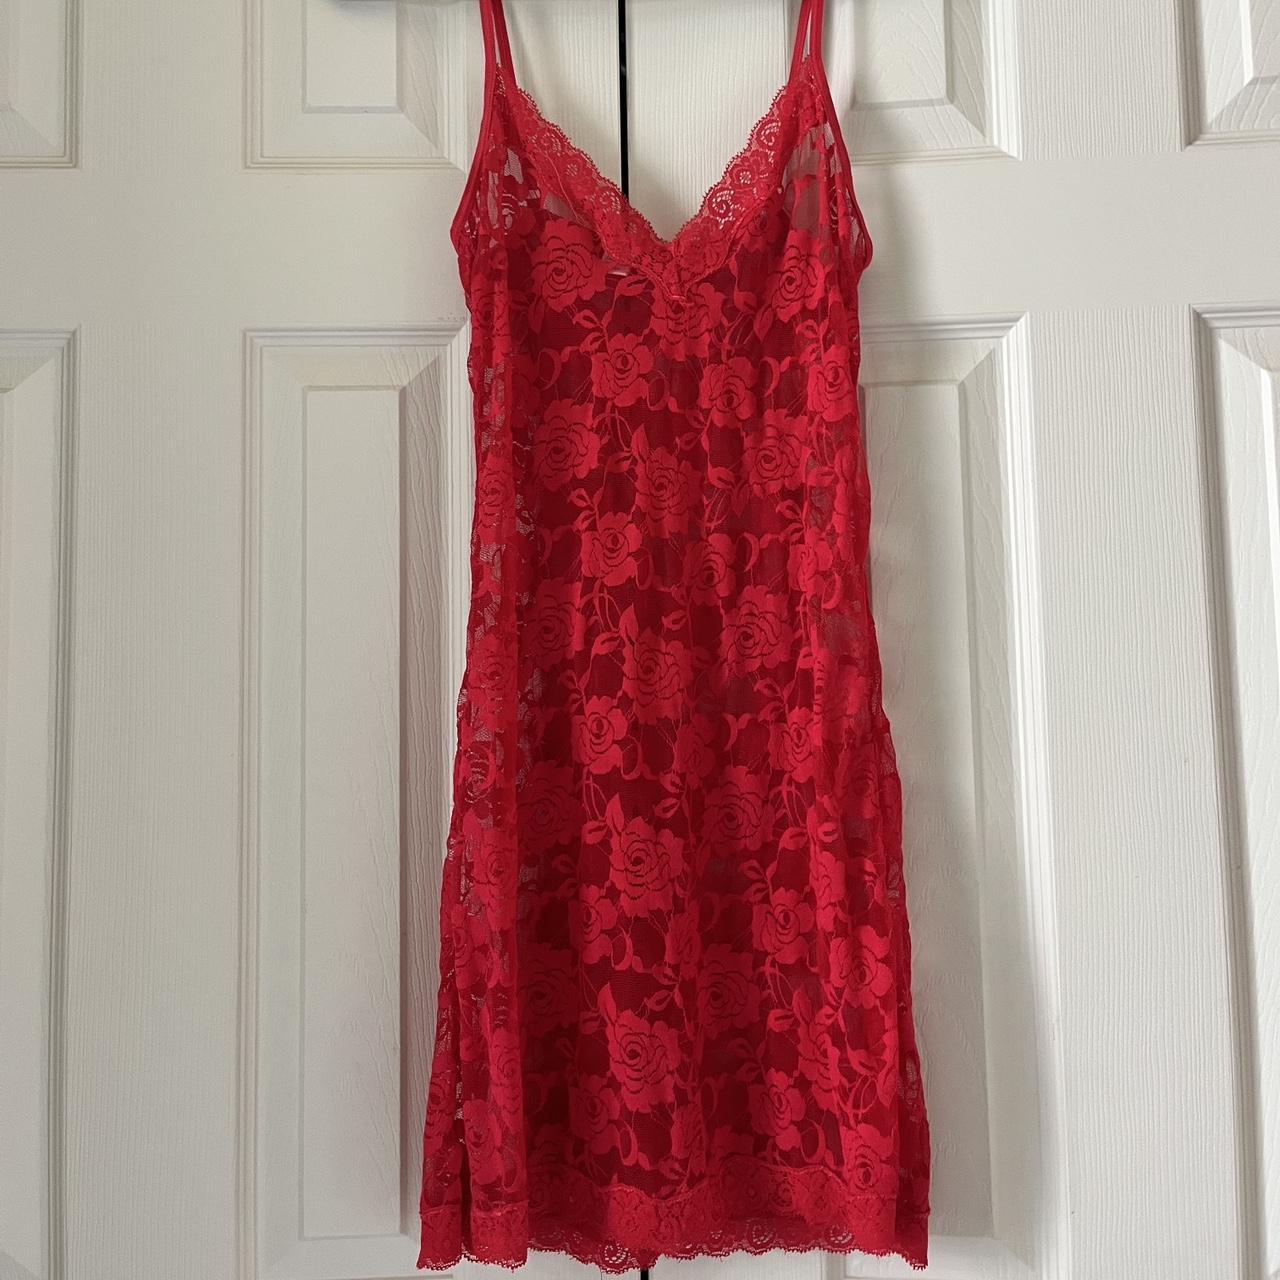 Vintage lingerie red lace dress Sheer floral... - Depop